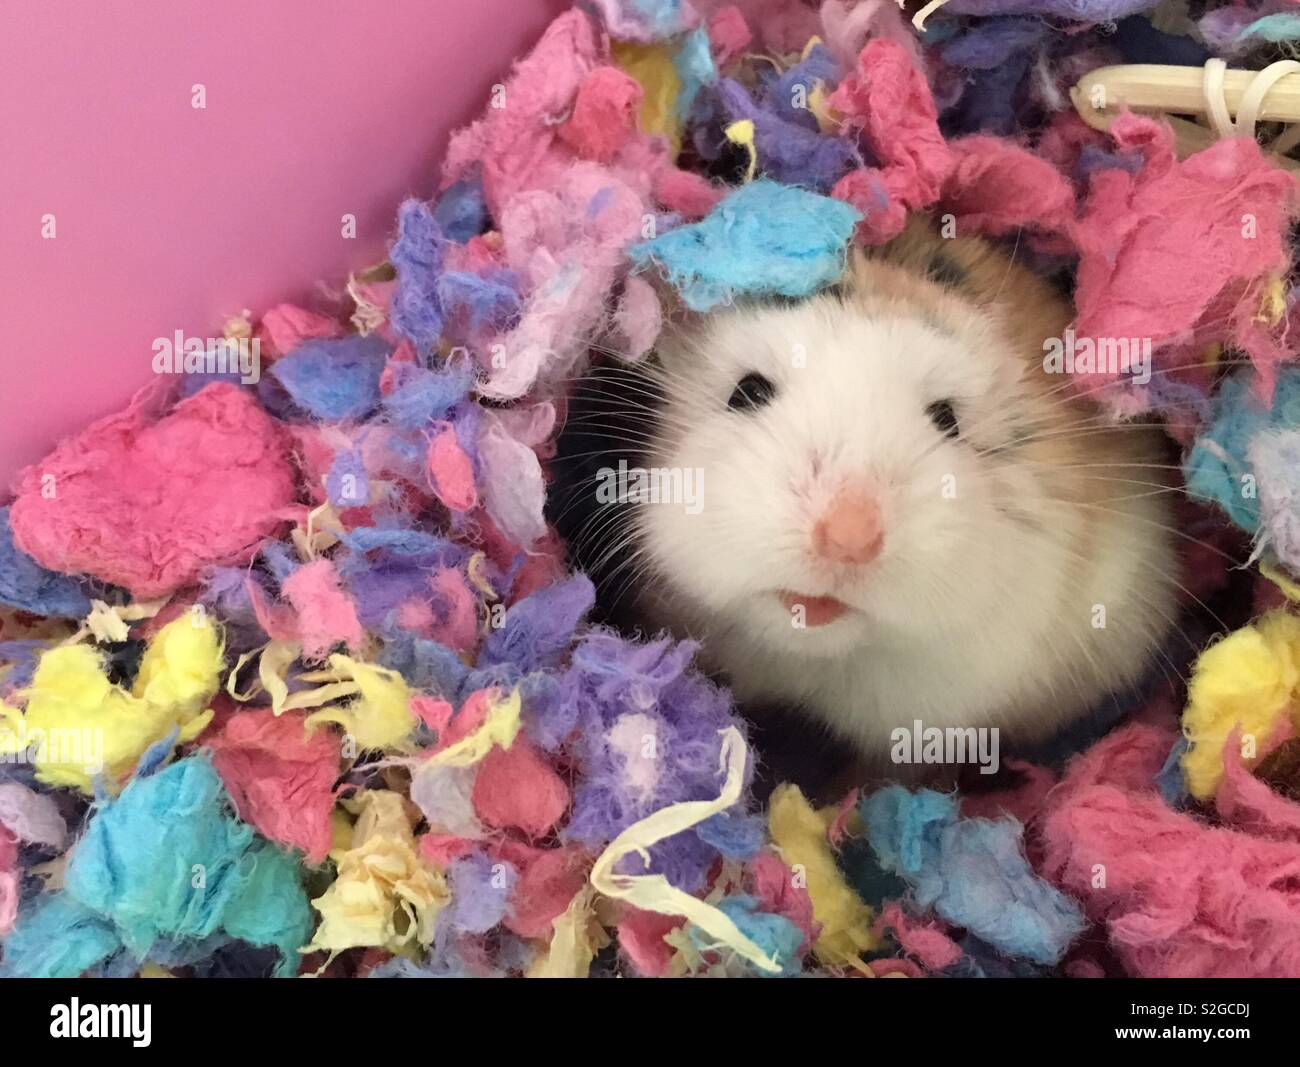 Roborovski Dwarf Hamster hiding in 